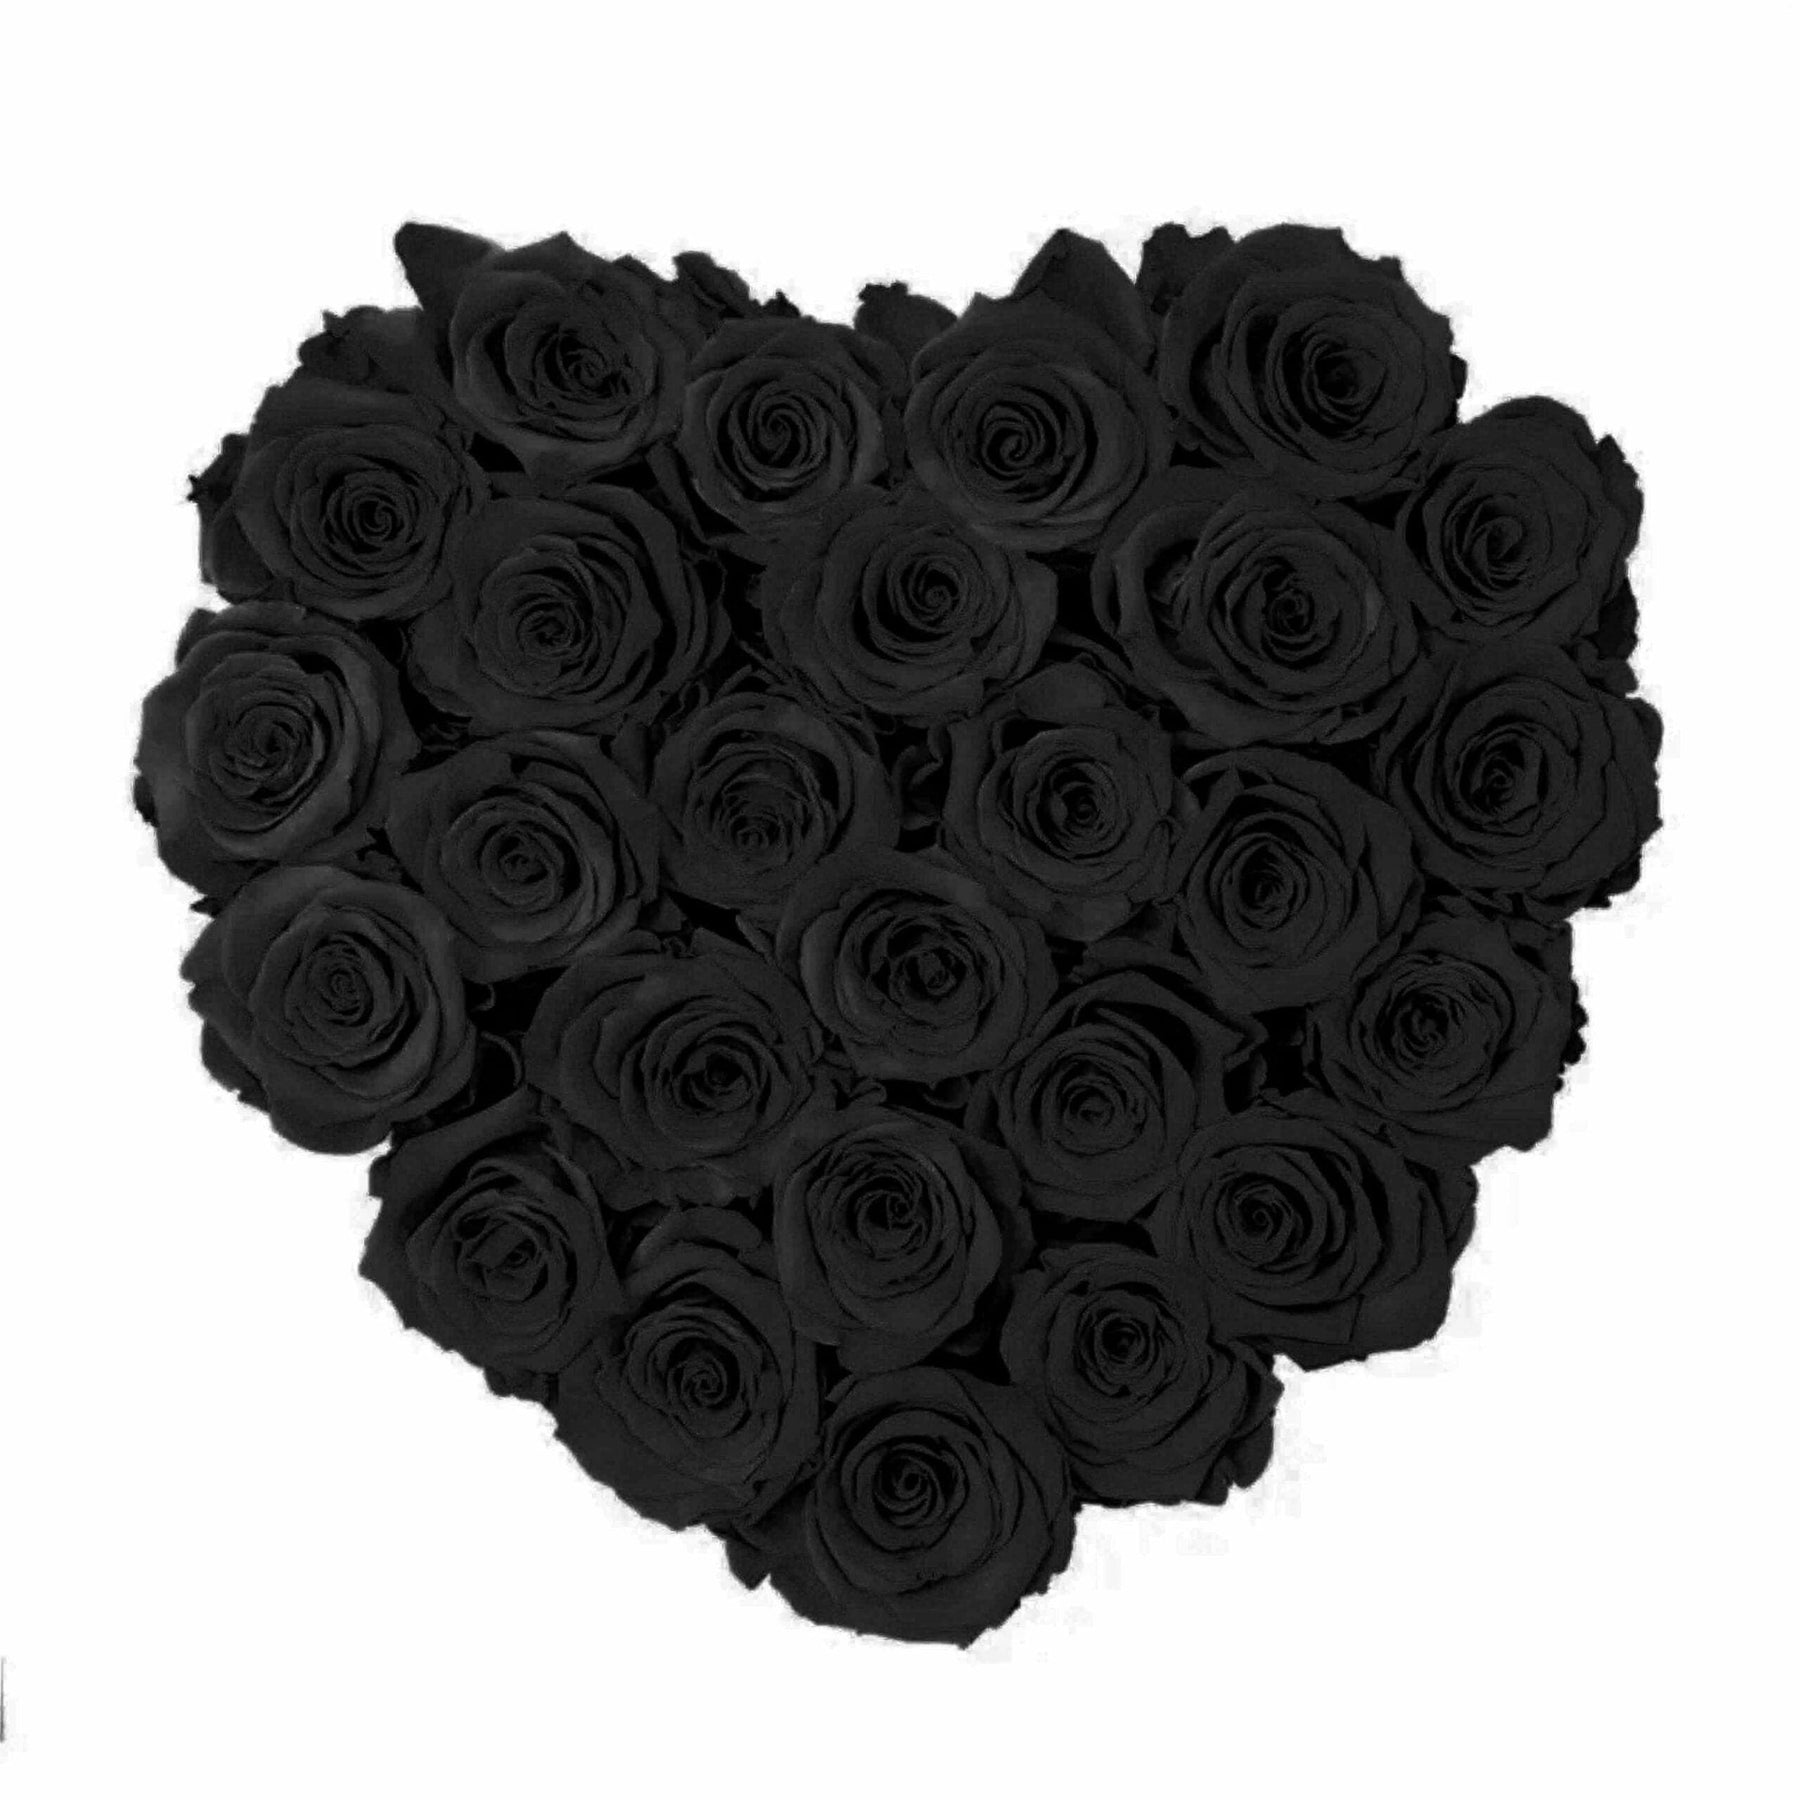 Large Love Box – Vitae Roses